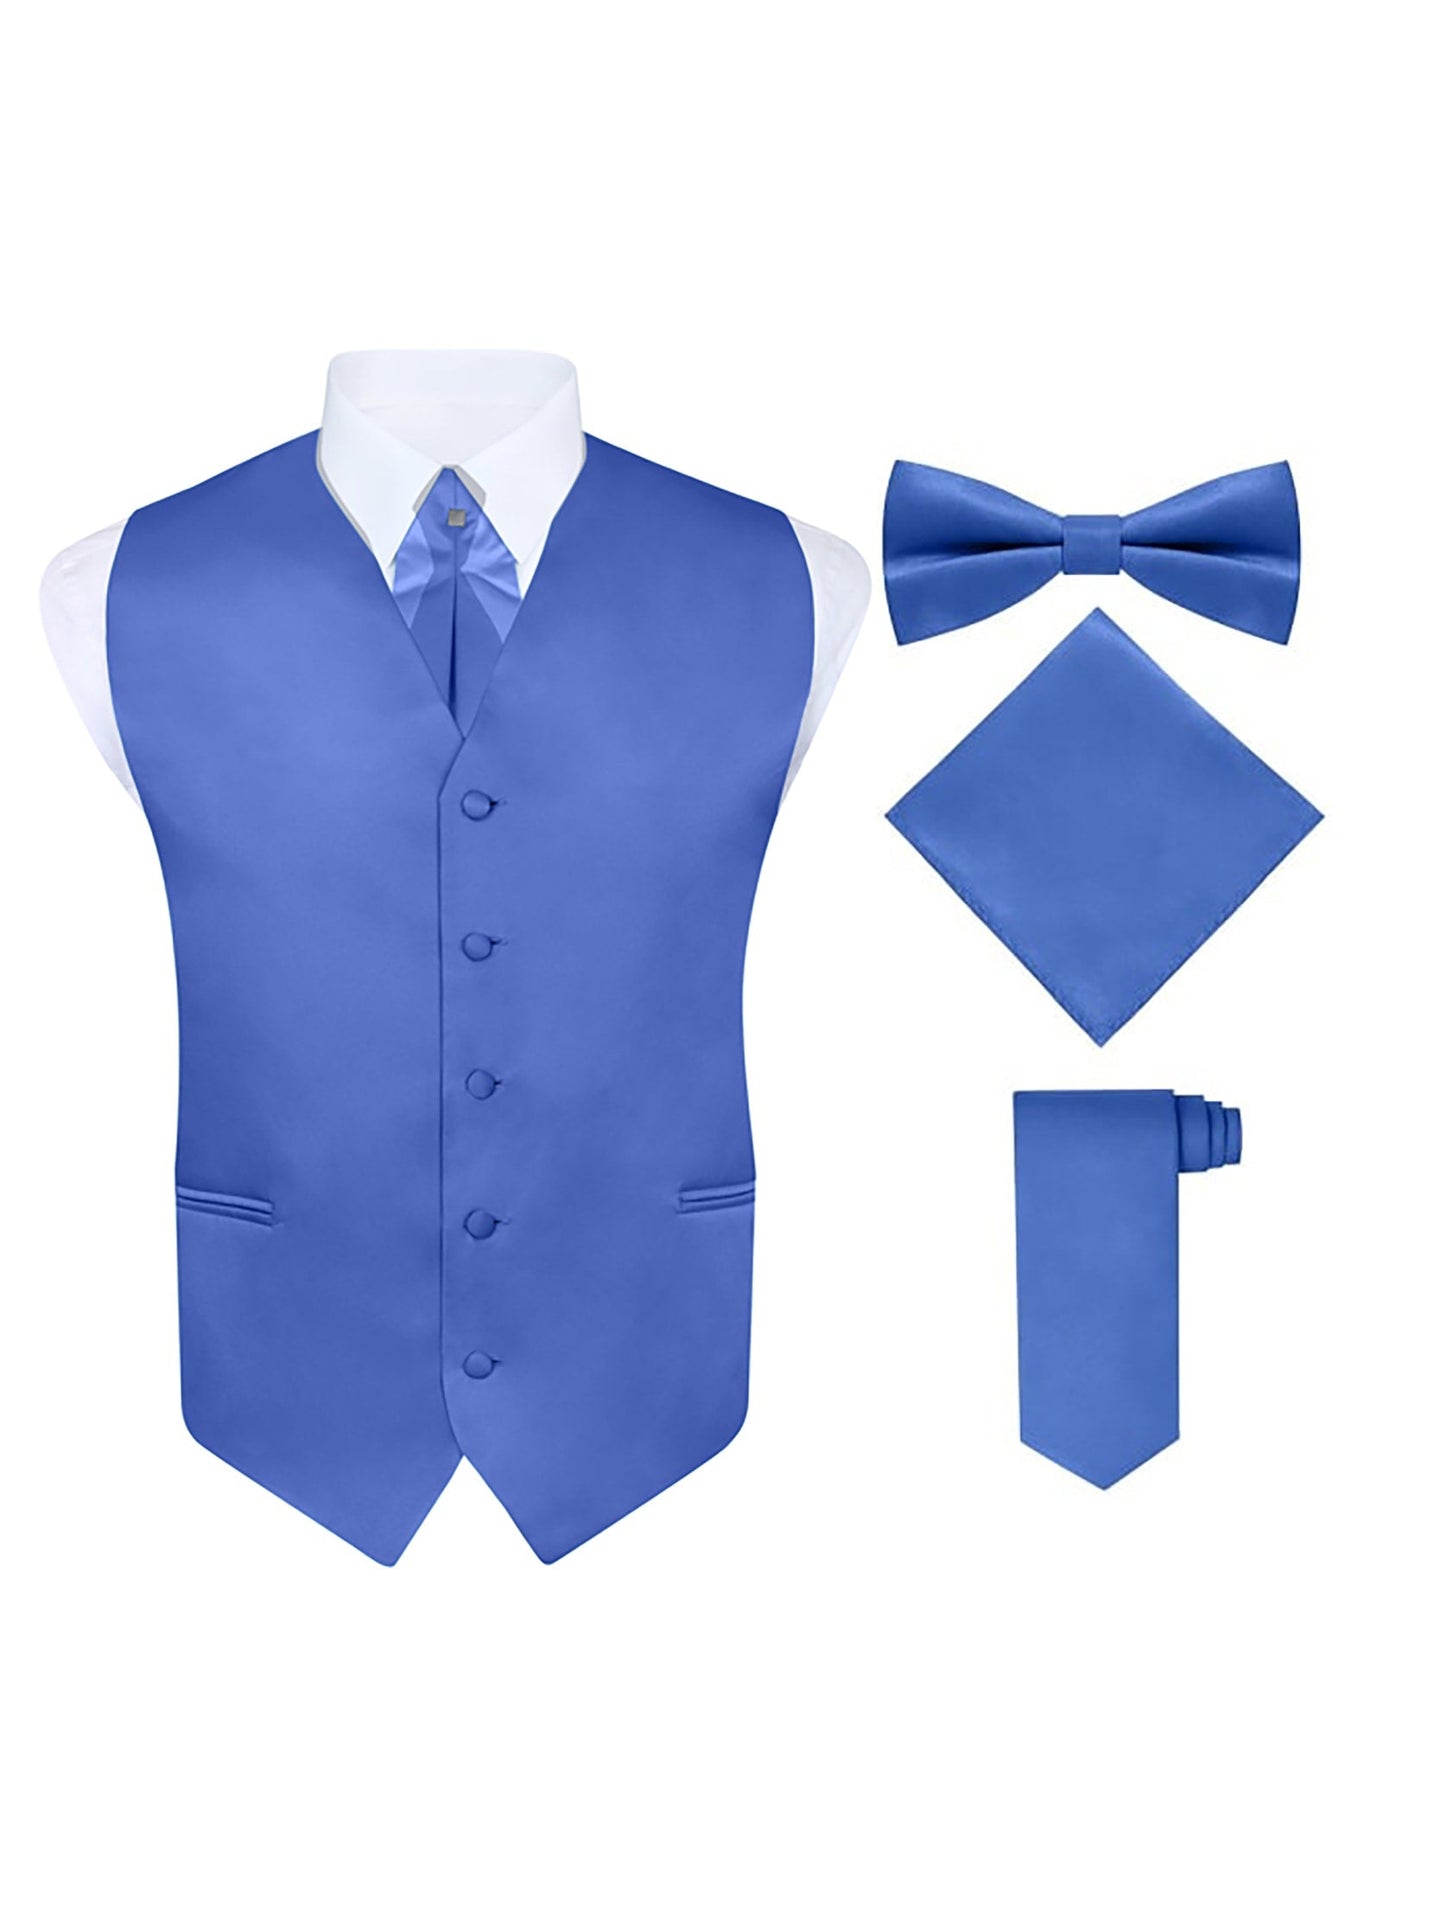 S.H. Churchill & Co. Men's 5 Piece Vest Set, with Cravat, Bow Tie, Neck Tie & Pocket Hanky-Royal Blue